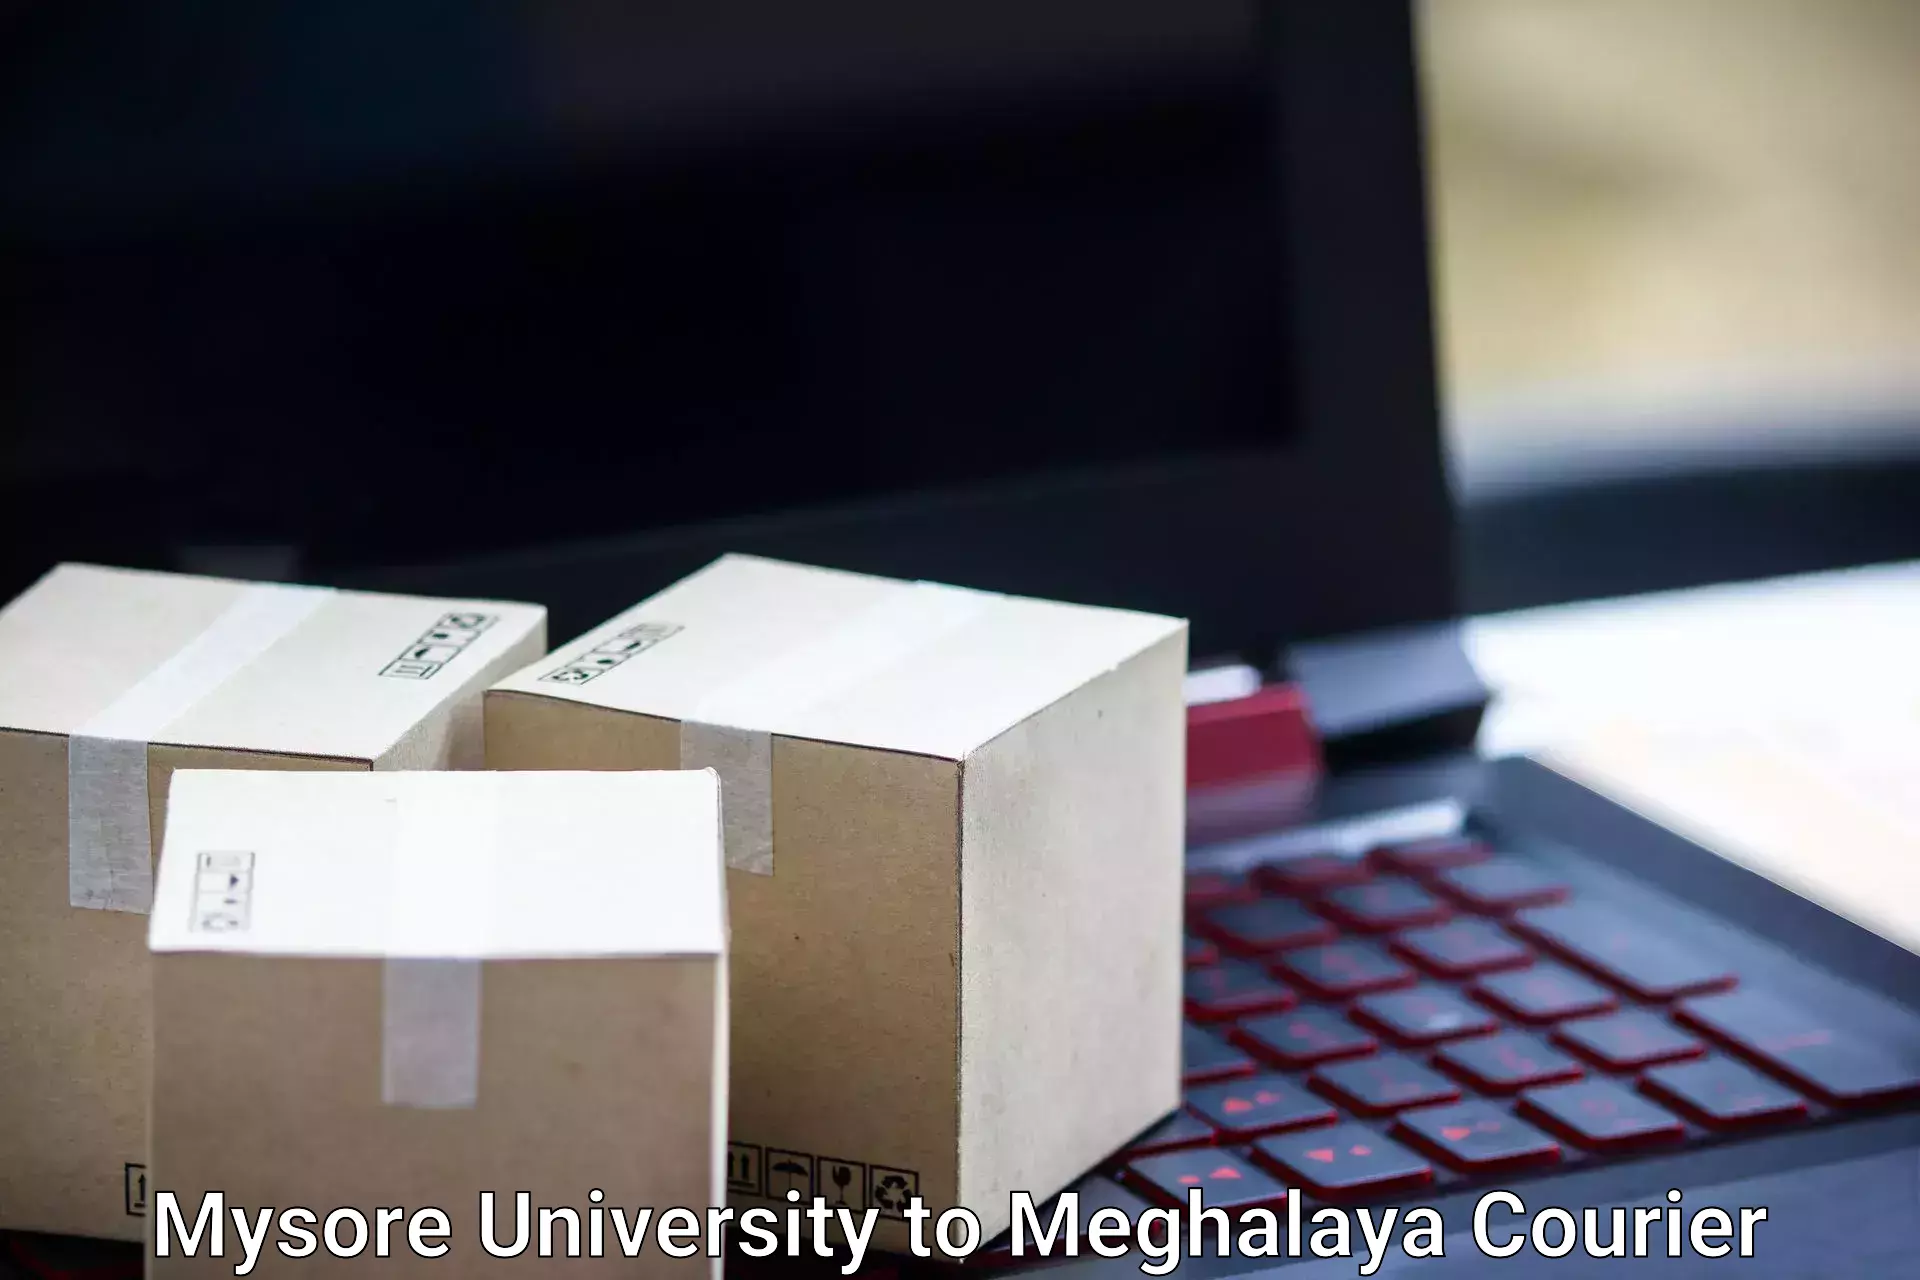 Baggage delivery estimate in Mysore University to Tura